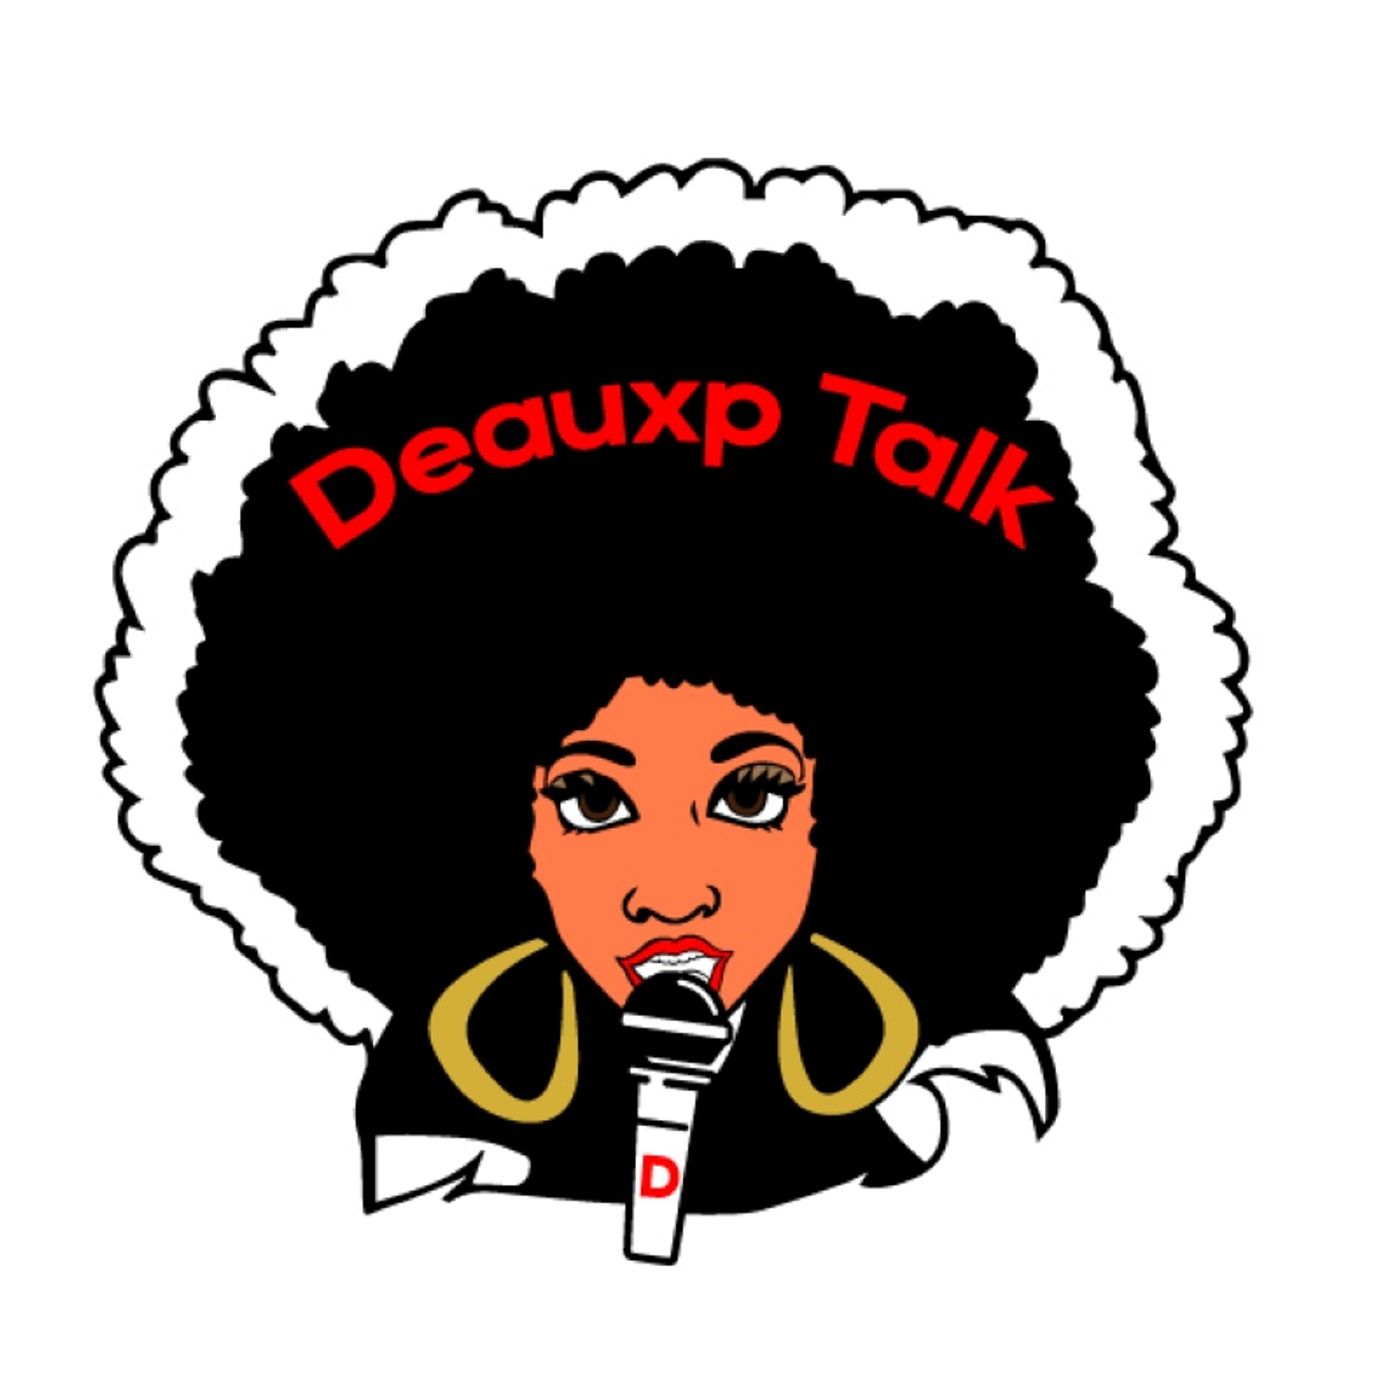 Deauxp Talk